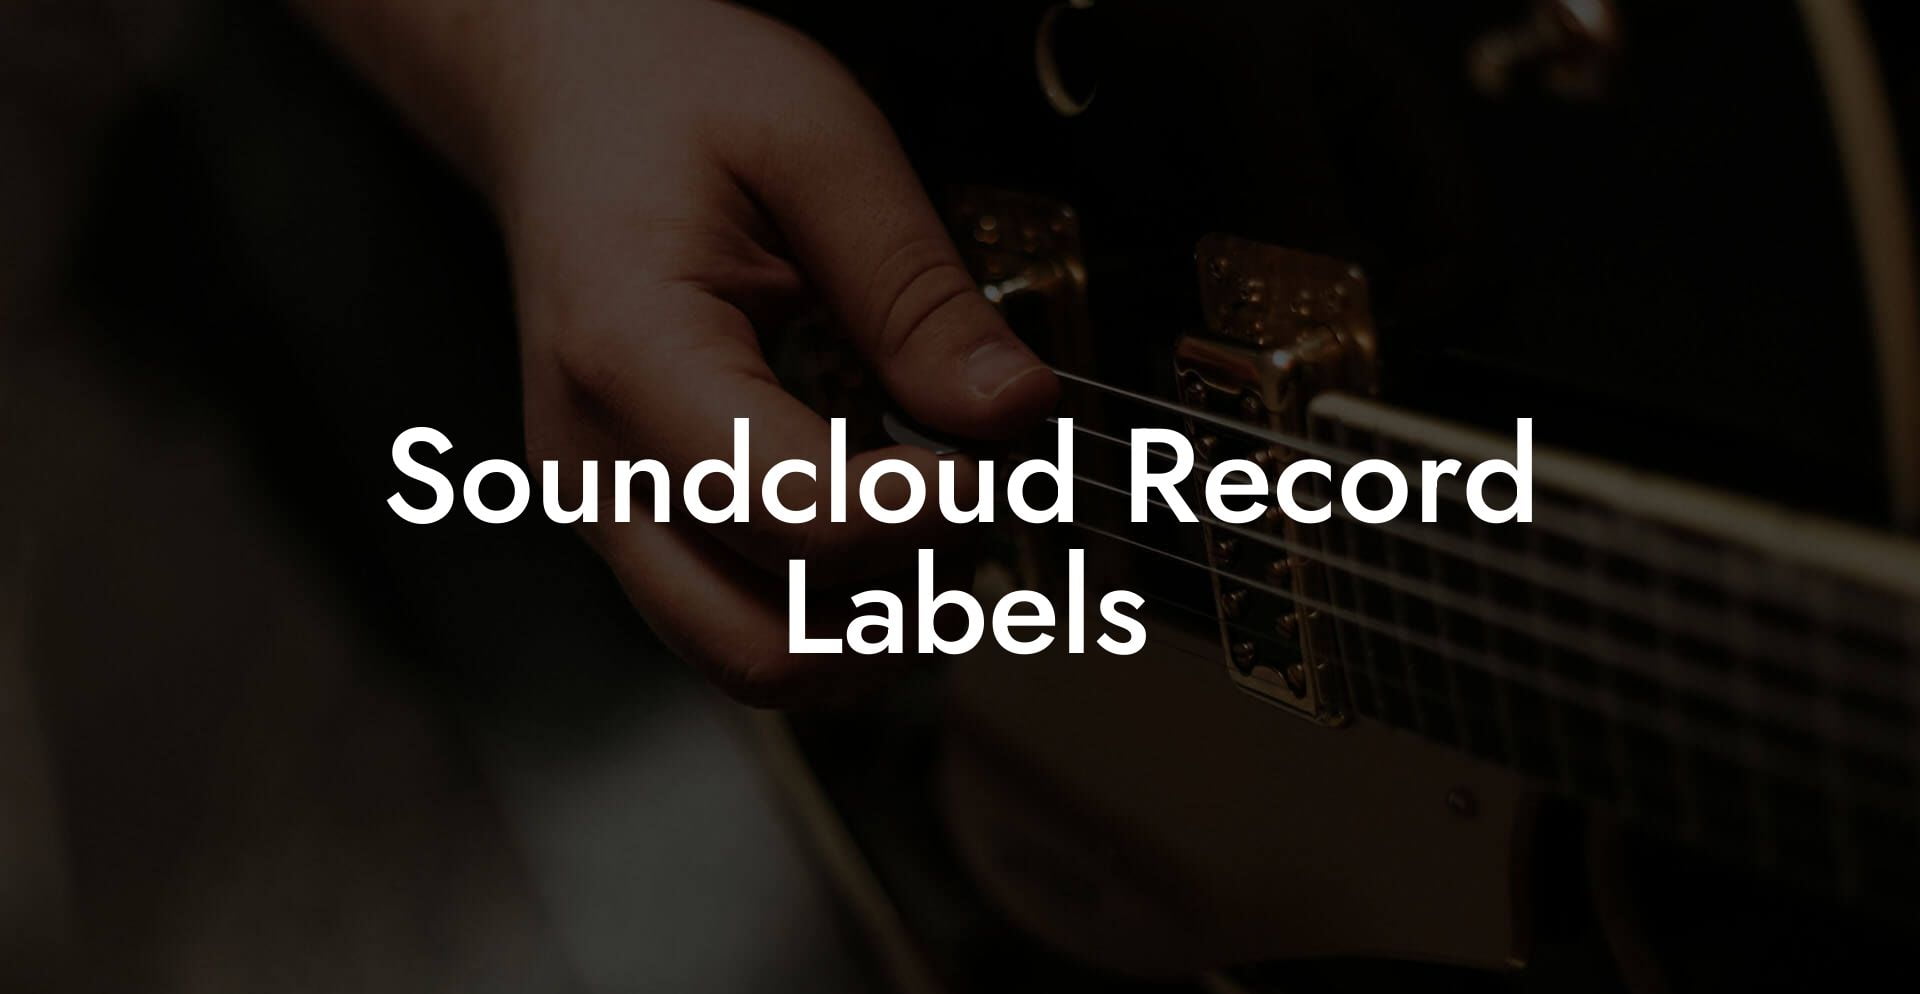 Soundcloud Record Labels